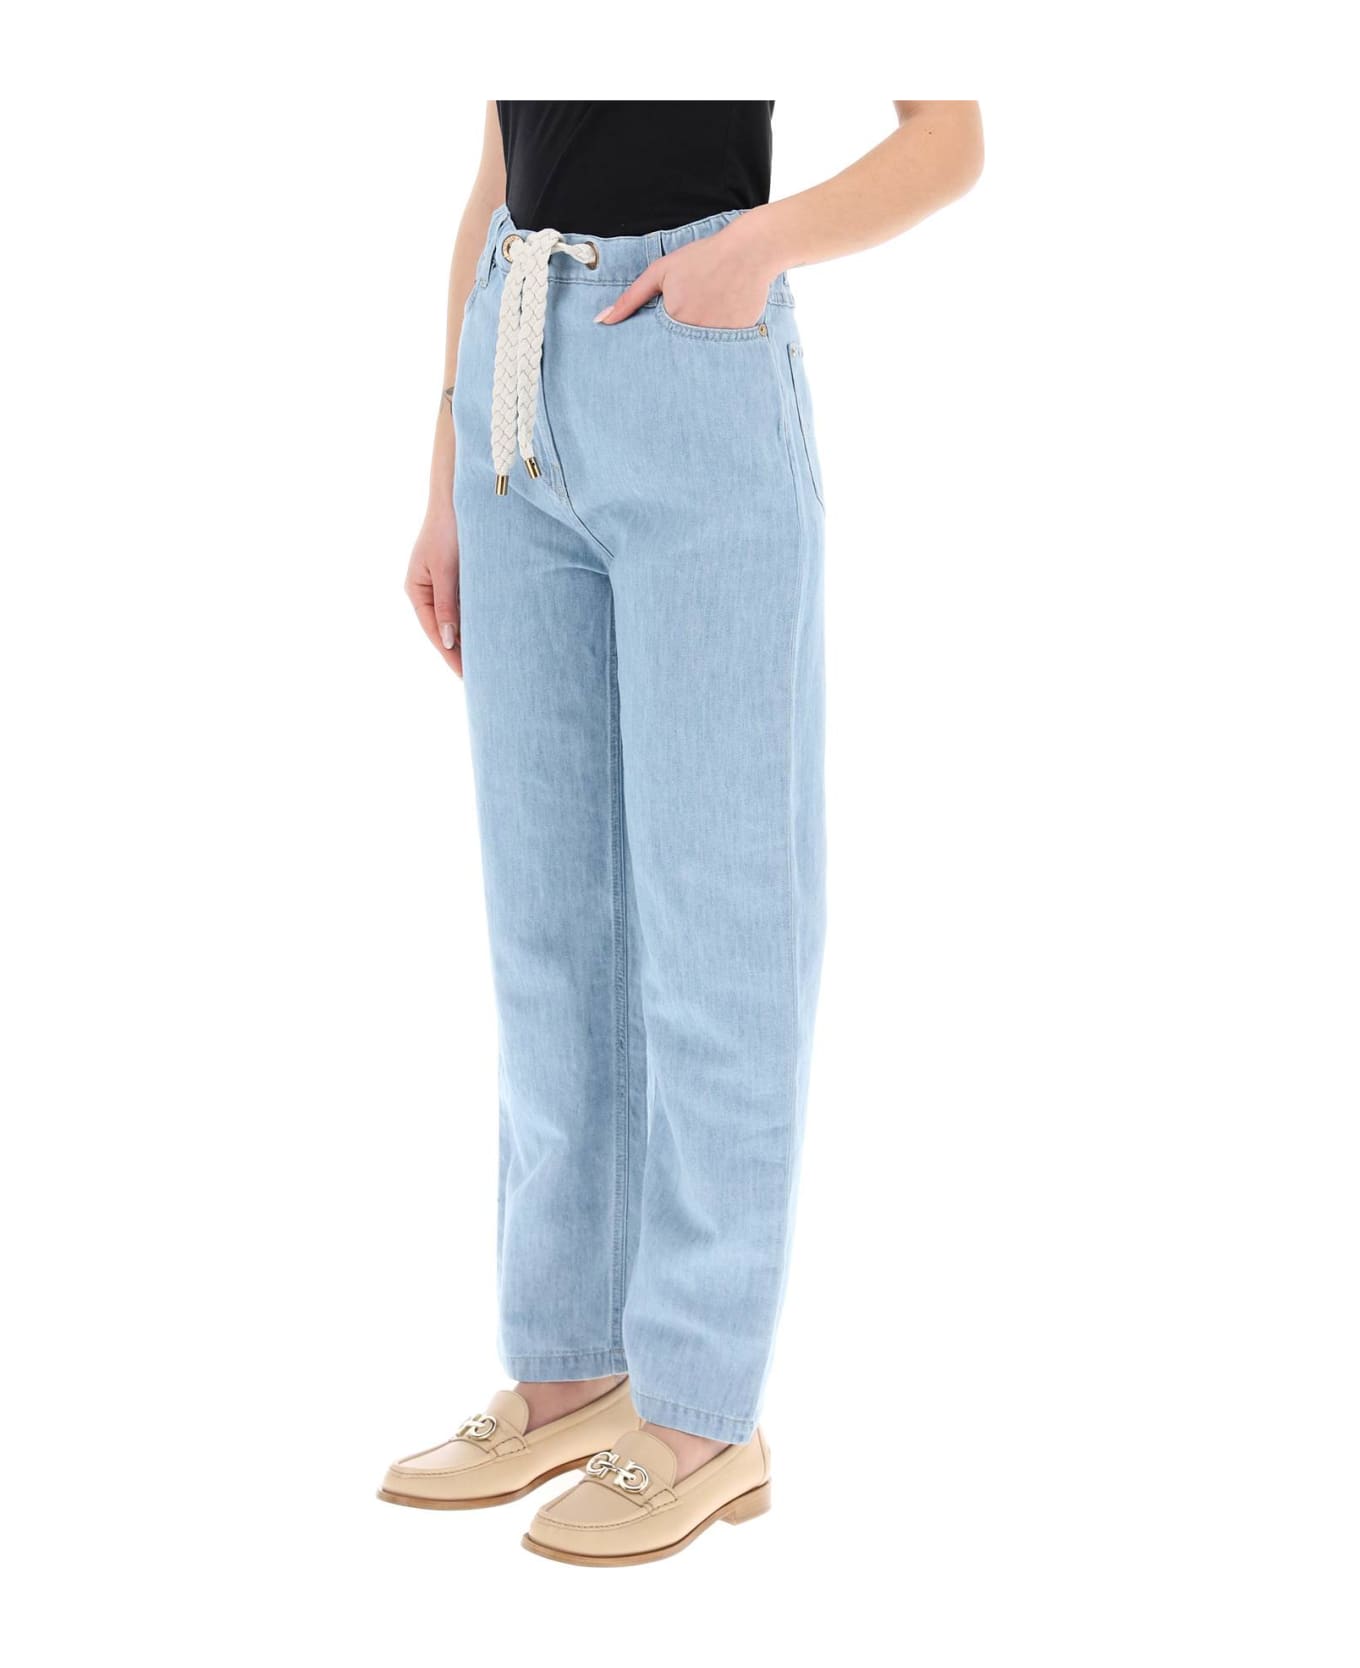 Agnona Drawstring Jeans In Light Denim - BLEACHED (Light blue) デニム